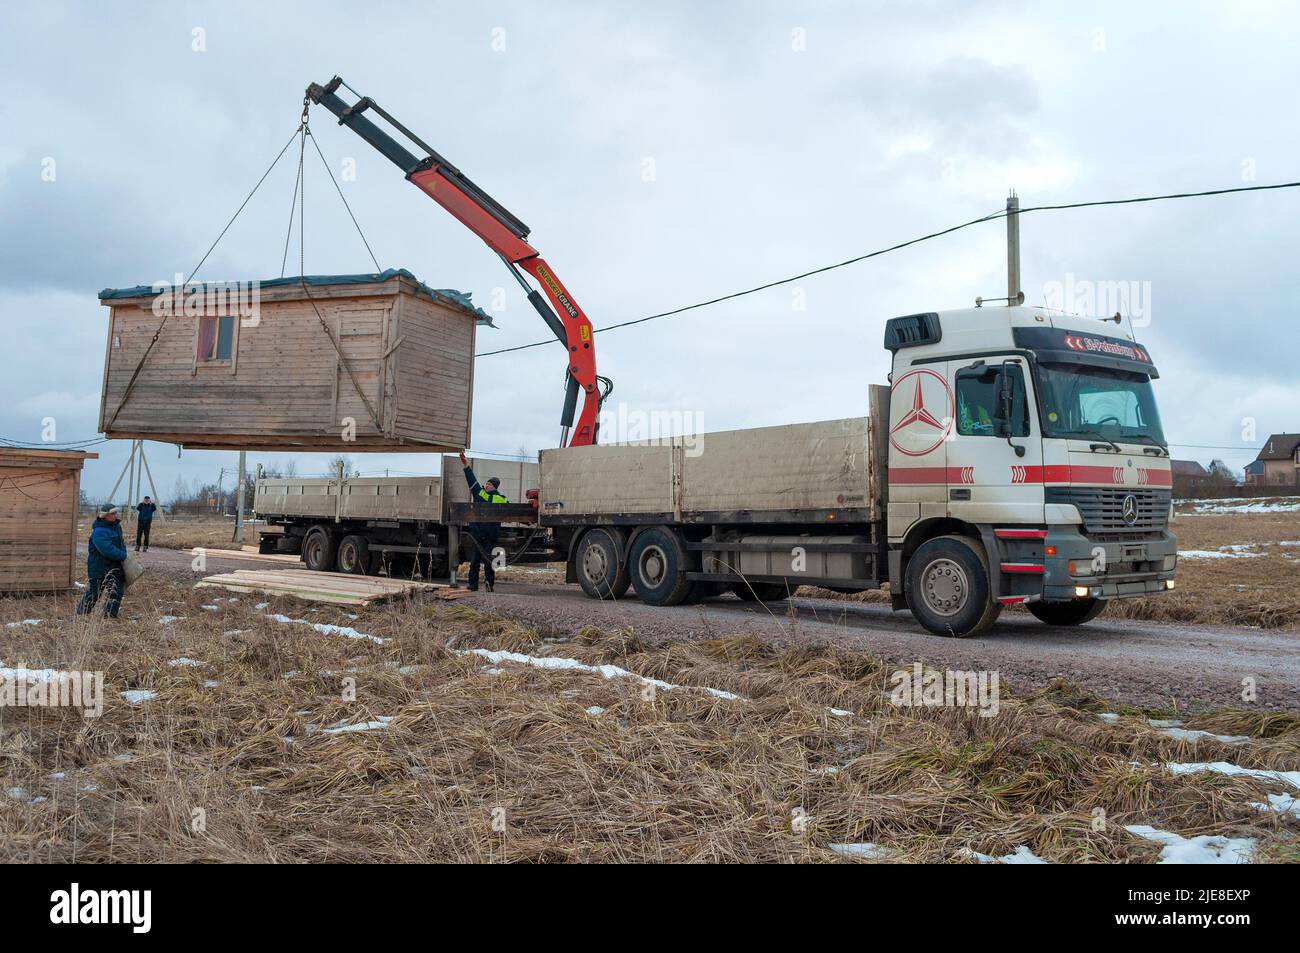 REGIONE DI LENINGRAD, RUSSIA - 04 MARZO 2021: Un camion con una gru manipolatrice scarica un capannone di costruzione in una nuvolosa giornata di marzo Foto Stock